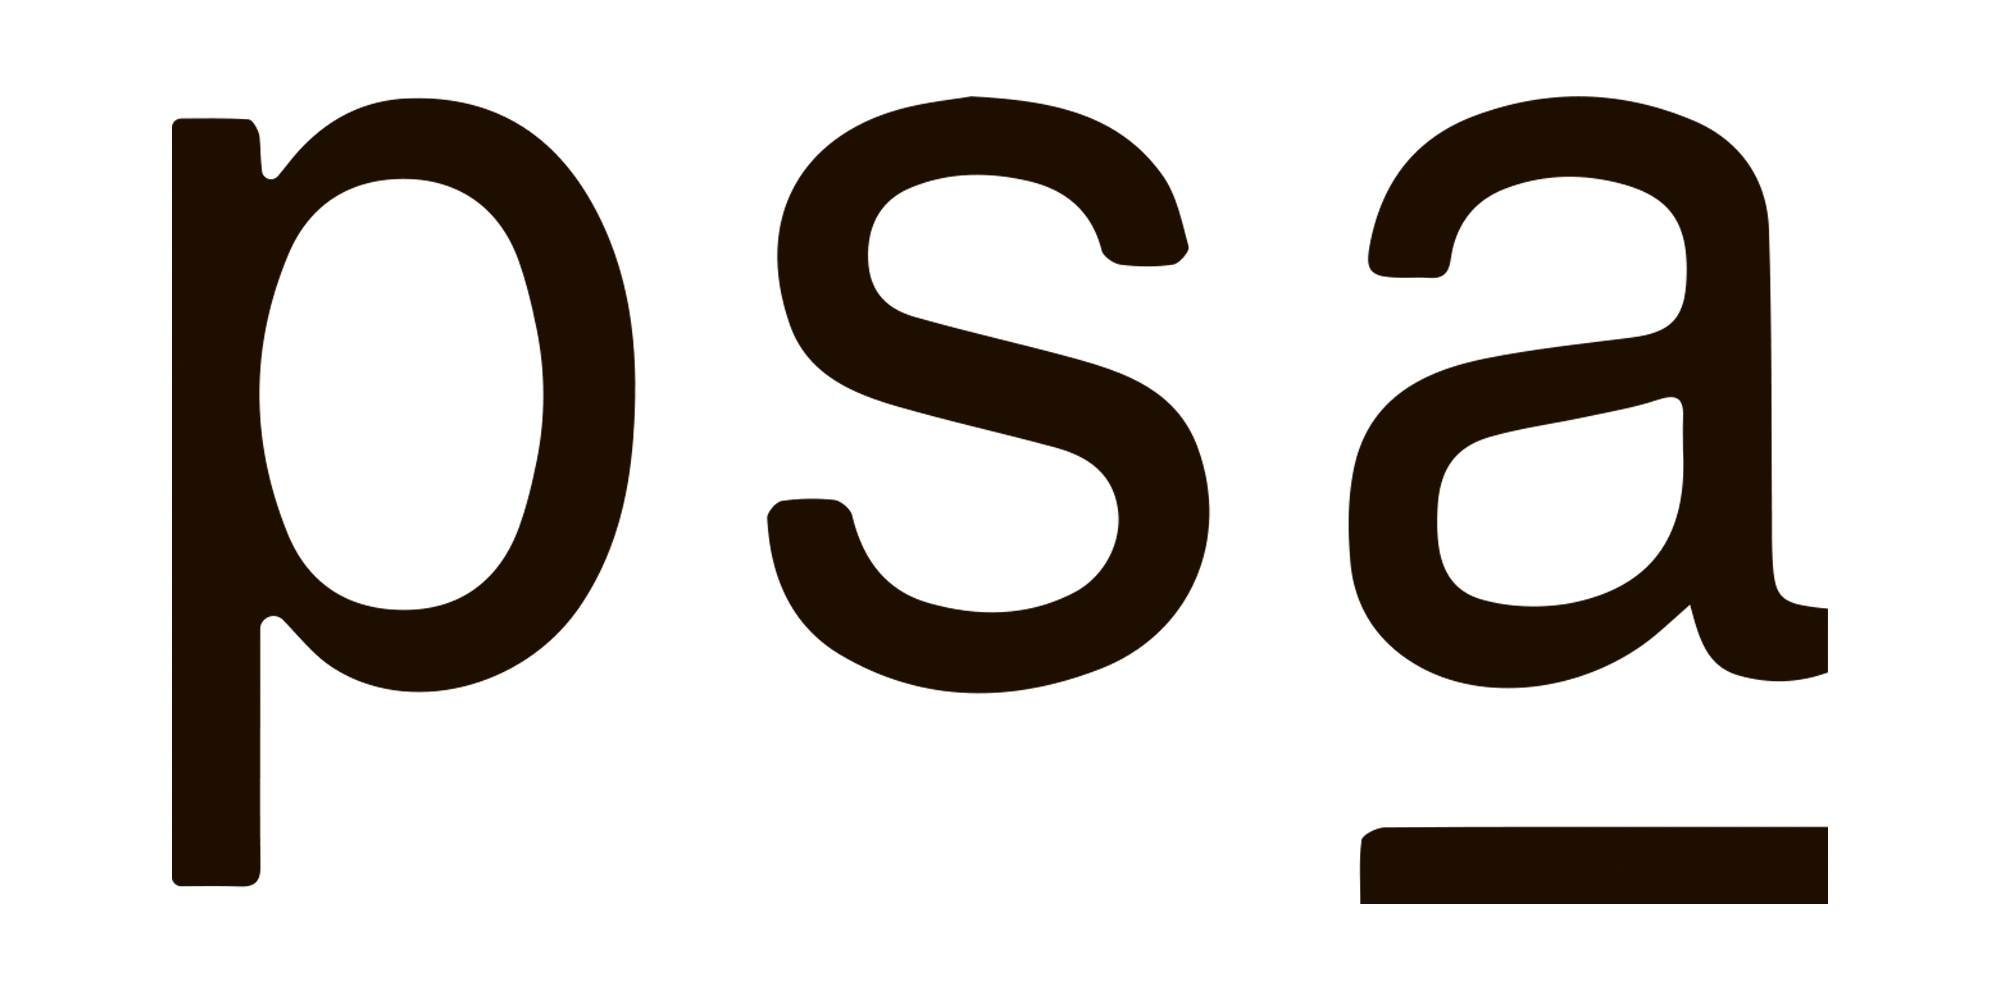 Логотип PSA